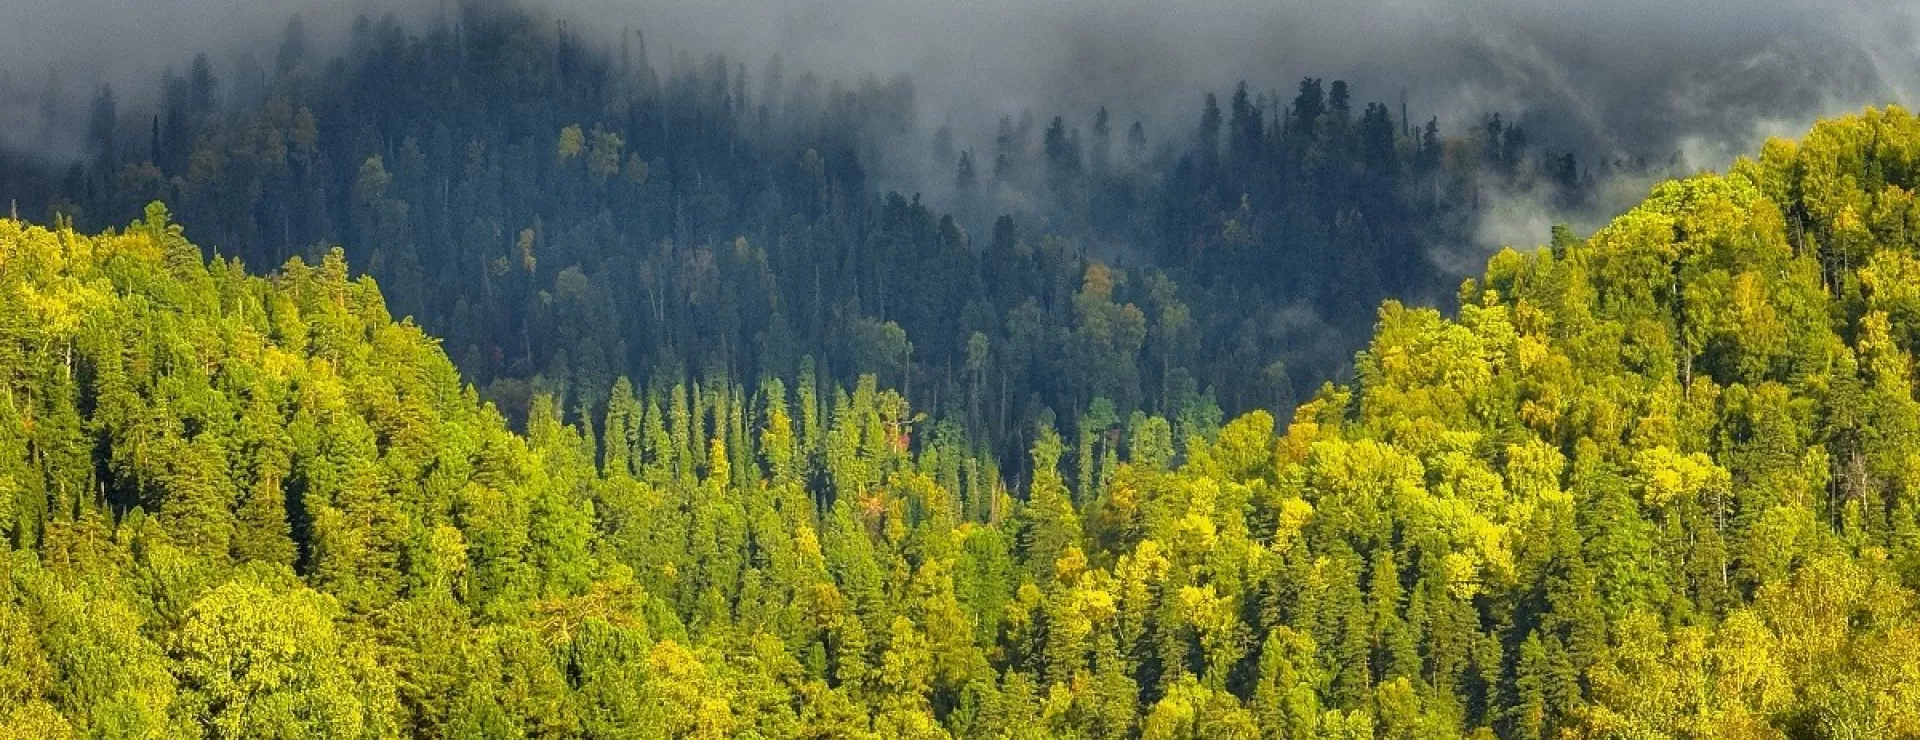 Фотографы показали, как осень тронула позолотой алтайскую тайгу